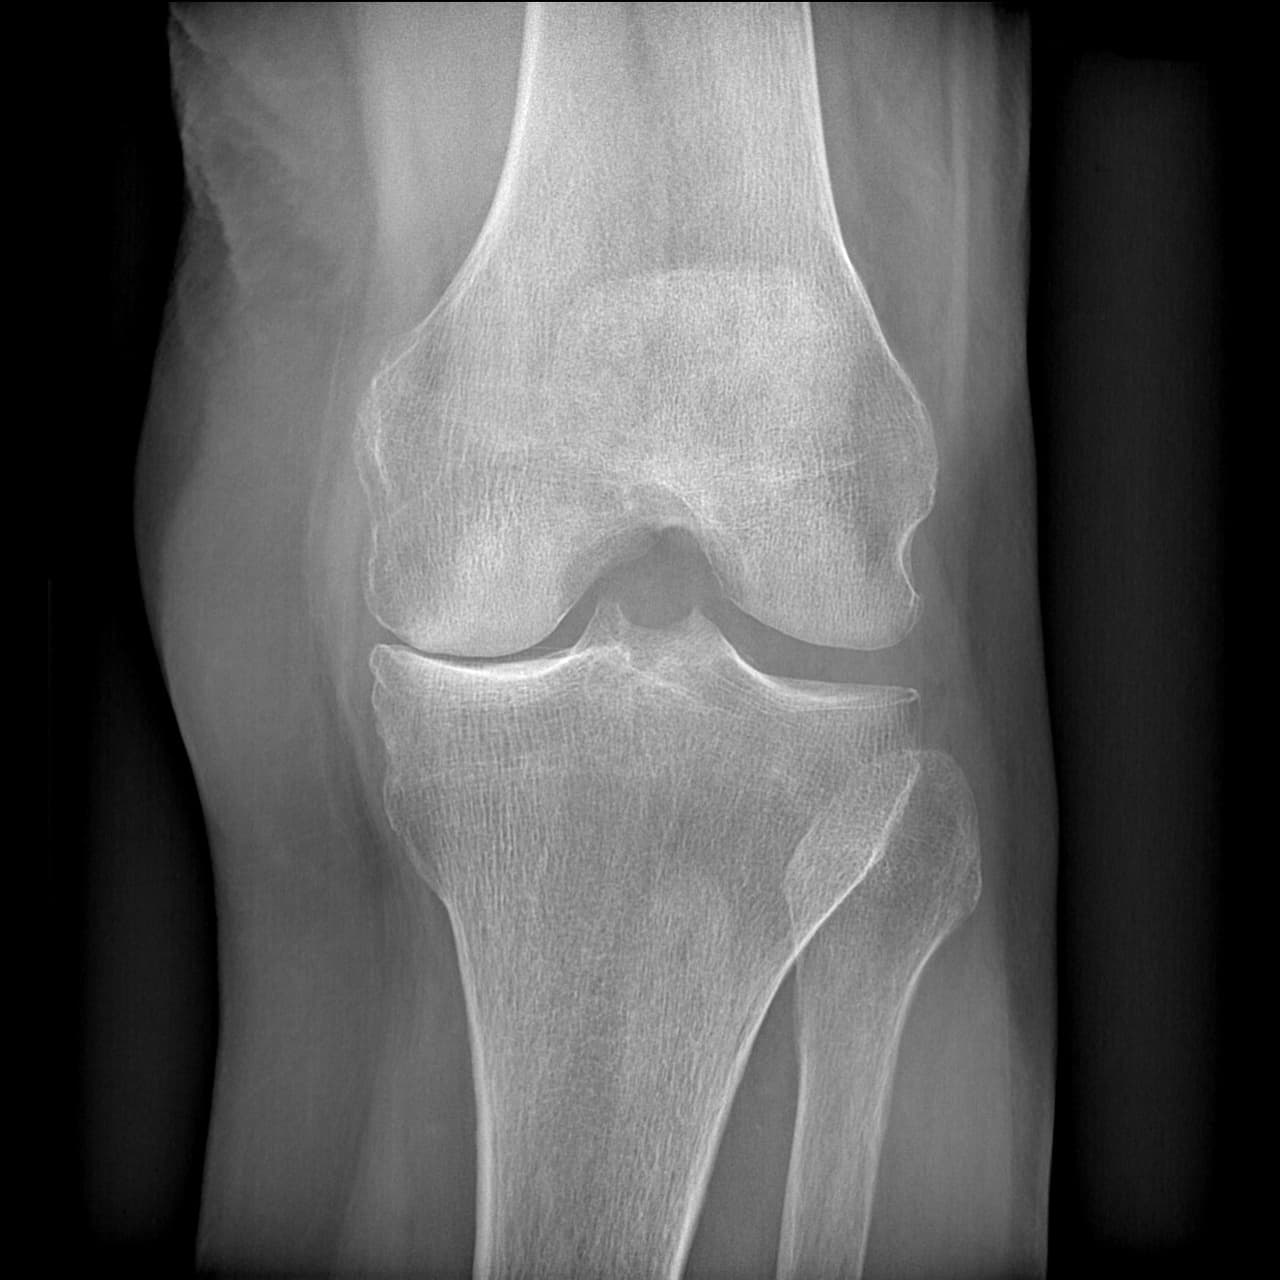 Radio du genou présentant une gonarthrose évoluée isolée du compartiment fémorotibial médial gauche.